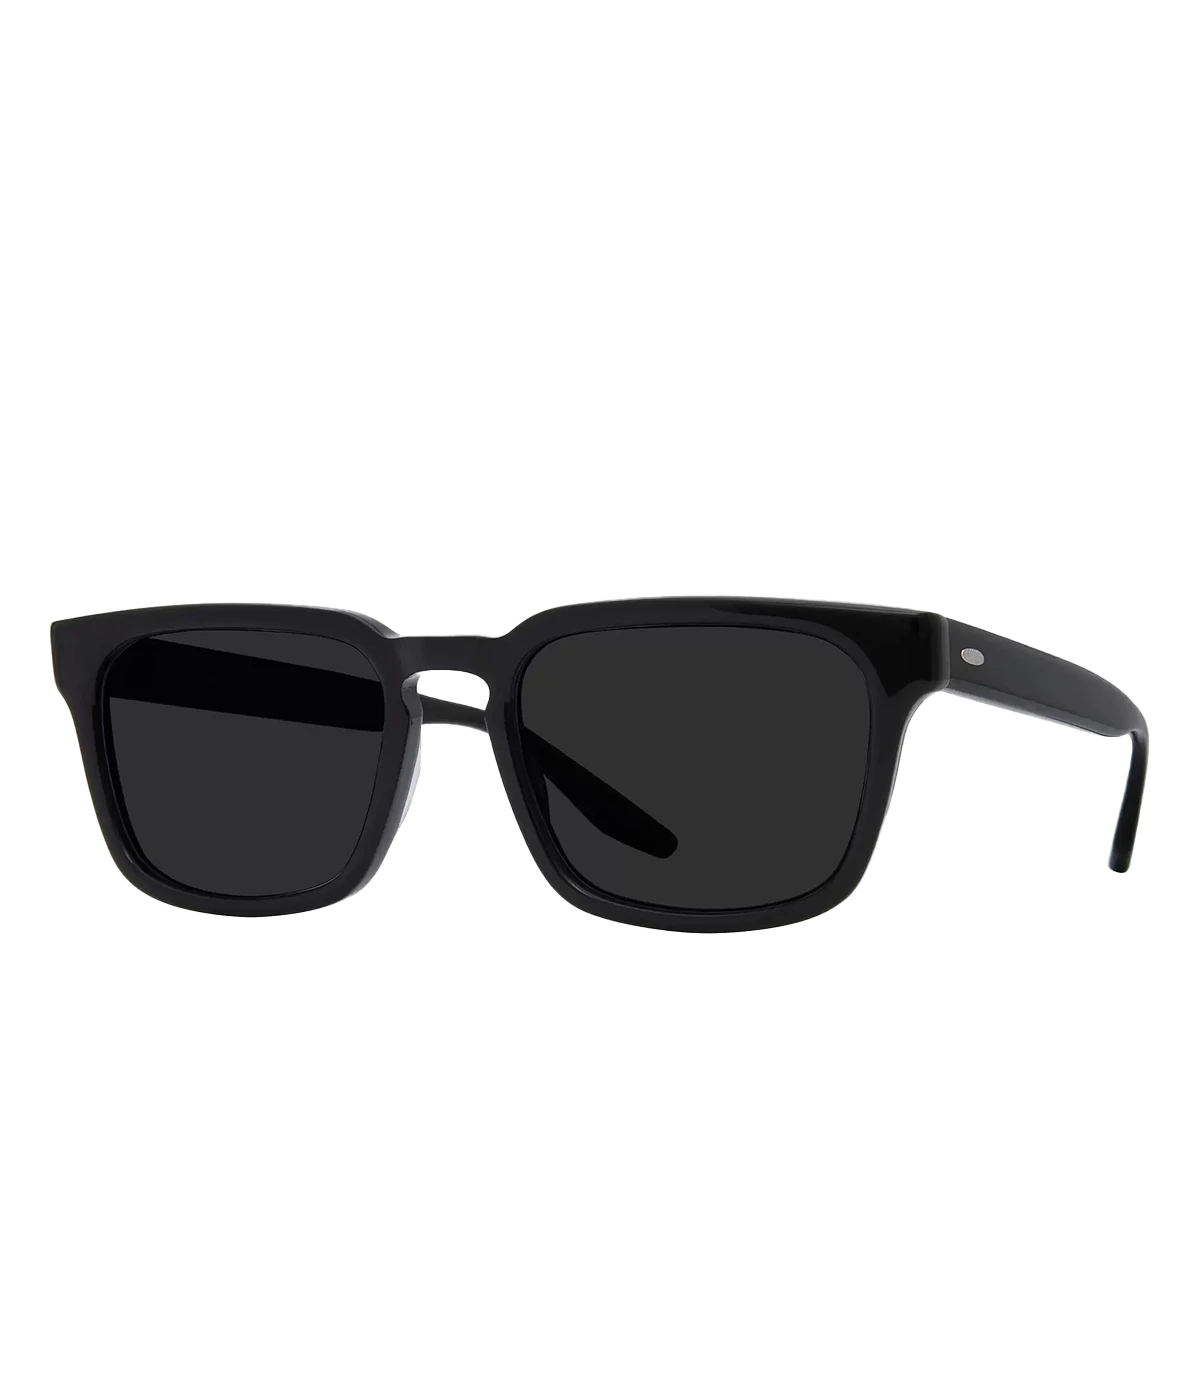 Hamilton Sunglasses in Black